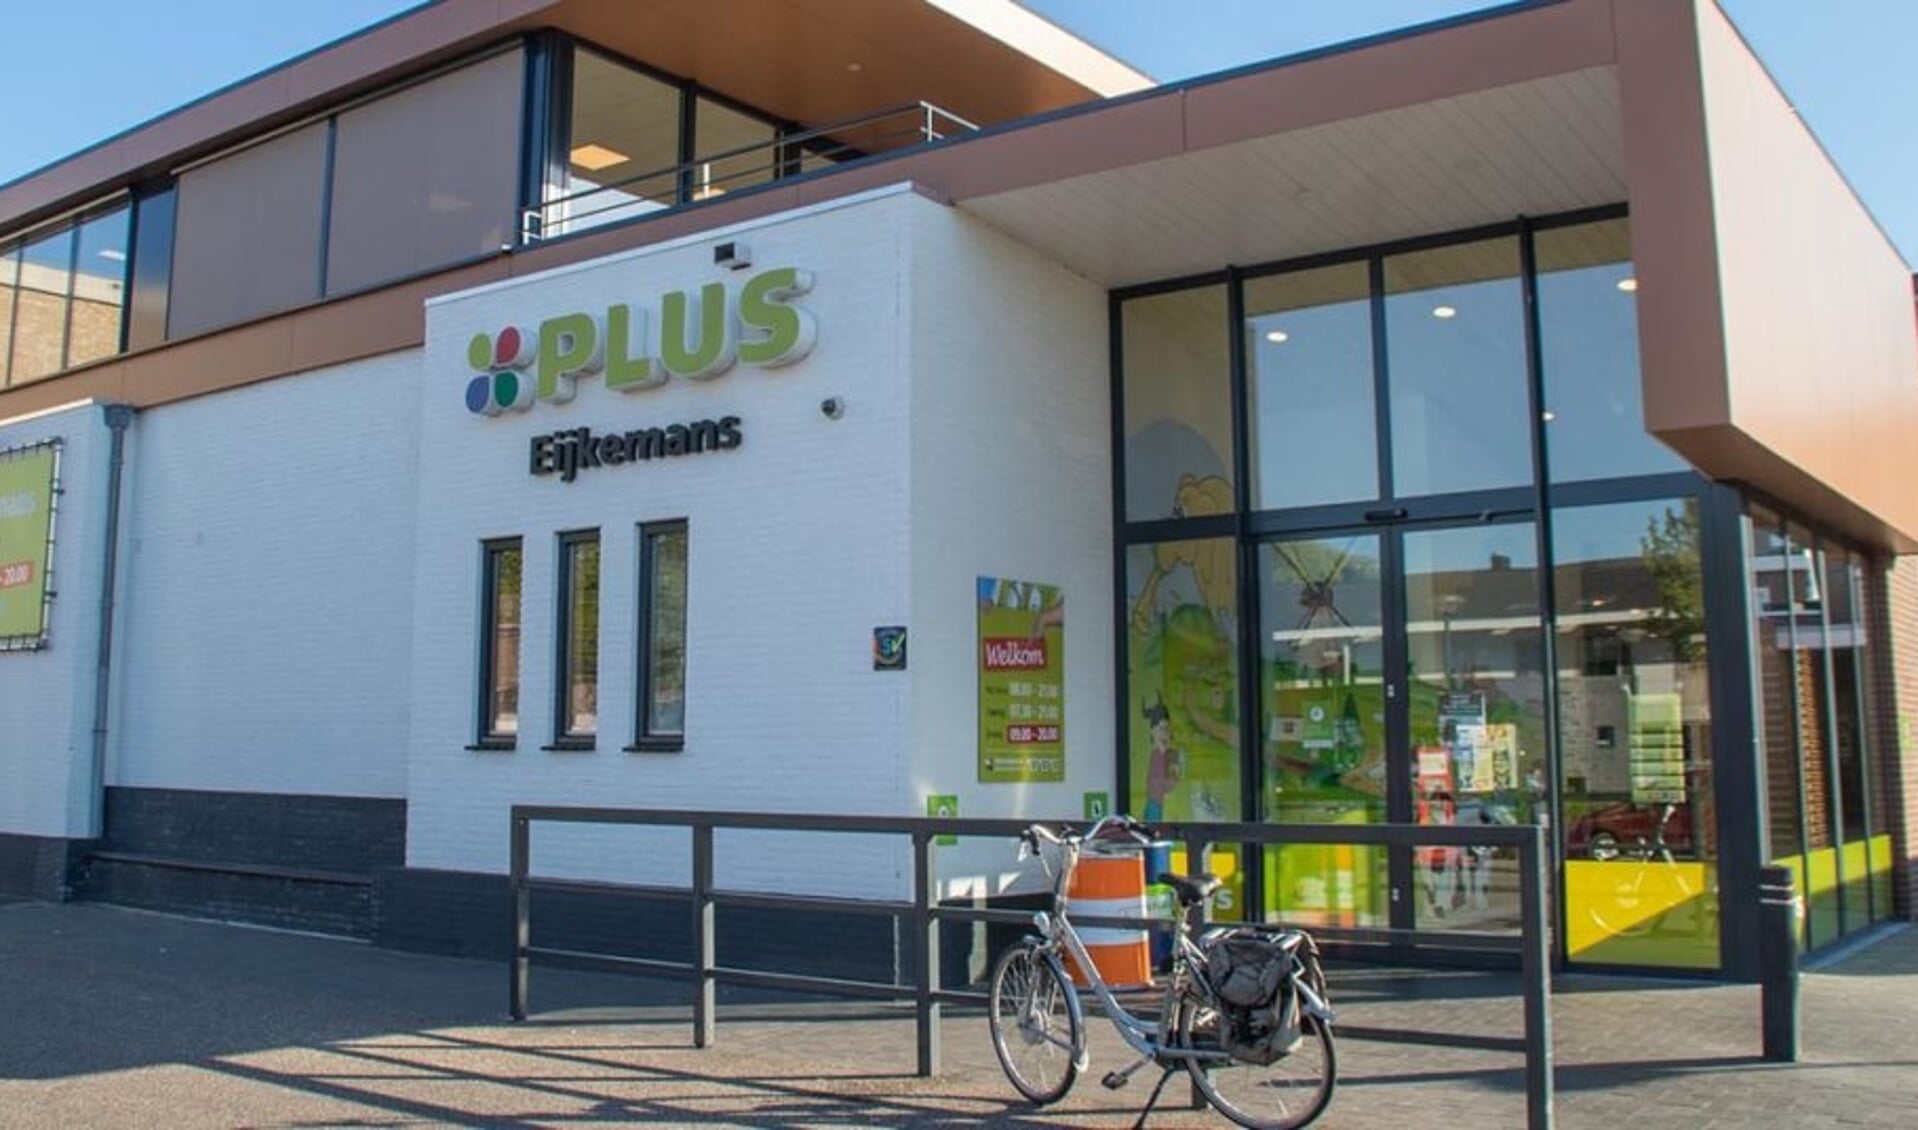 De Plus supermarkt van Wim Eijkemans in Schijndel. 